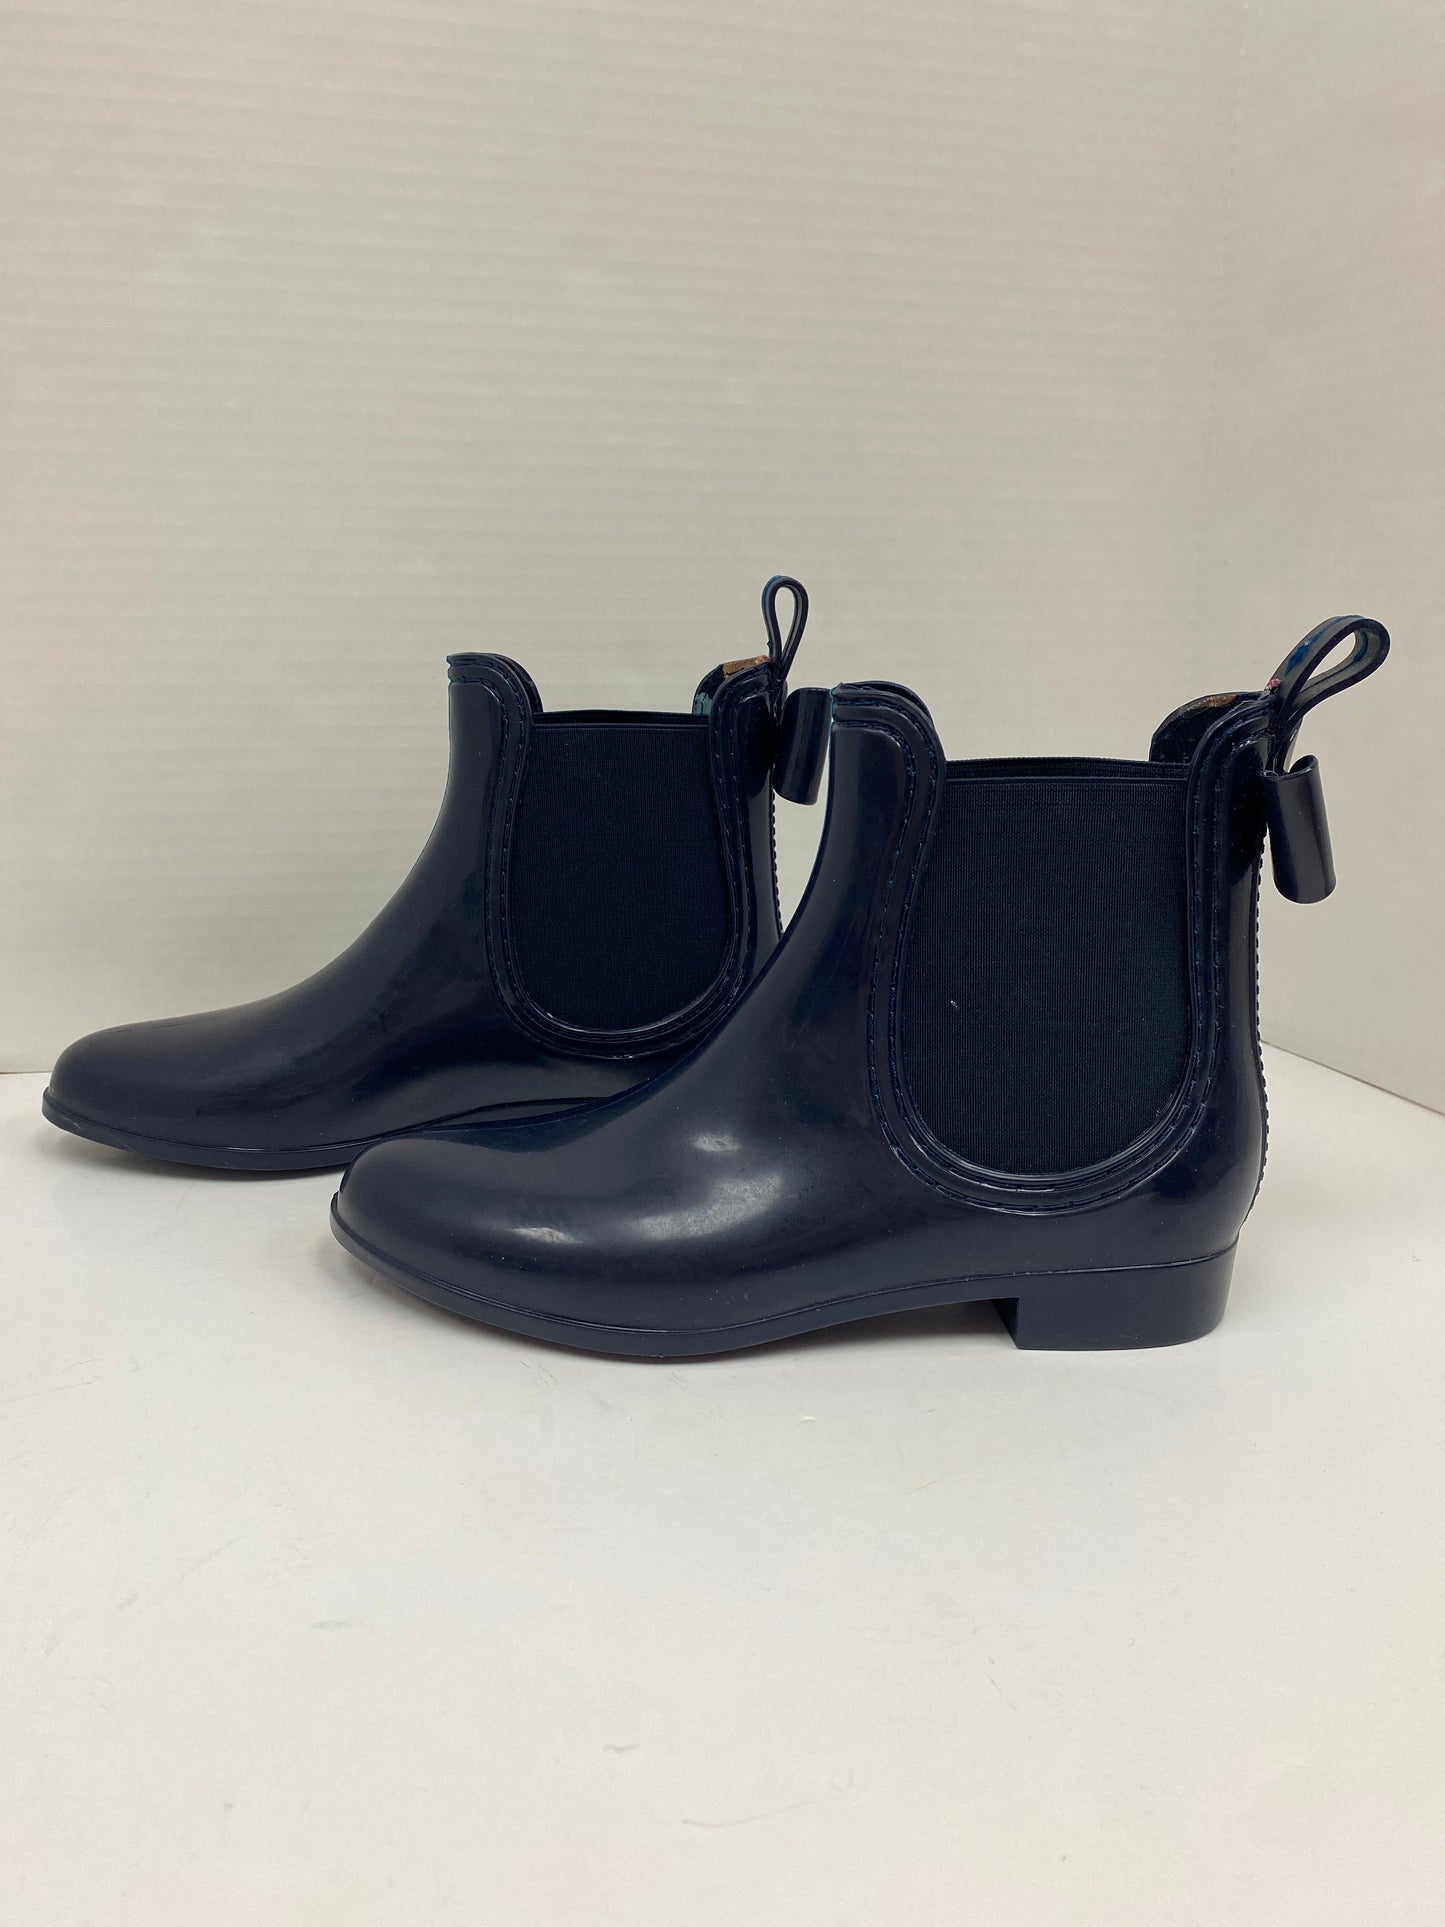 Blue Boots Rain Clarks, Size 7.5